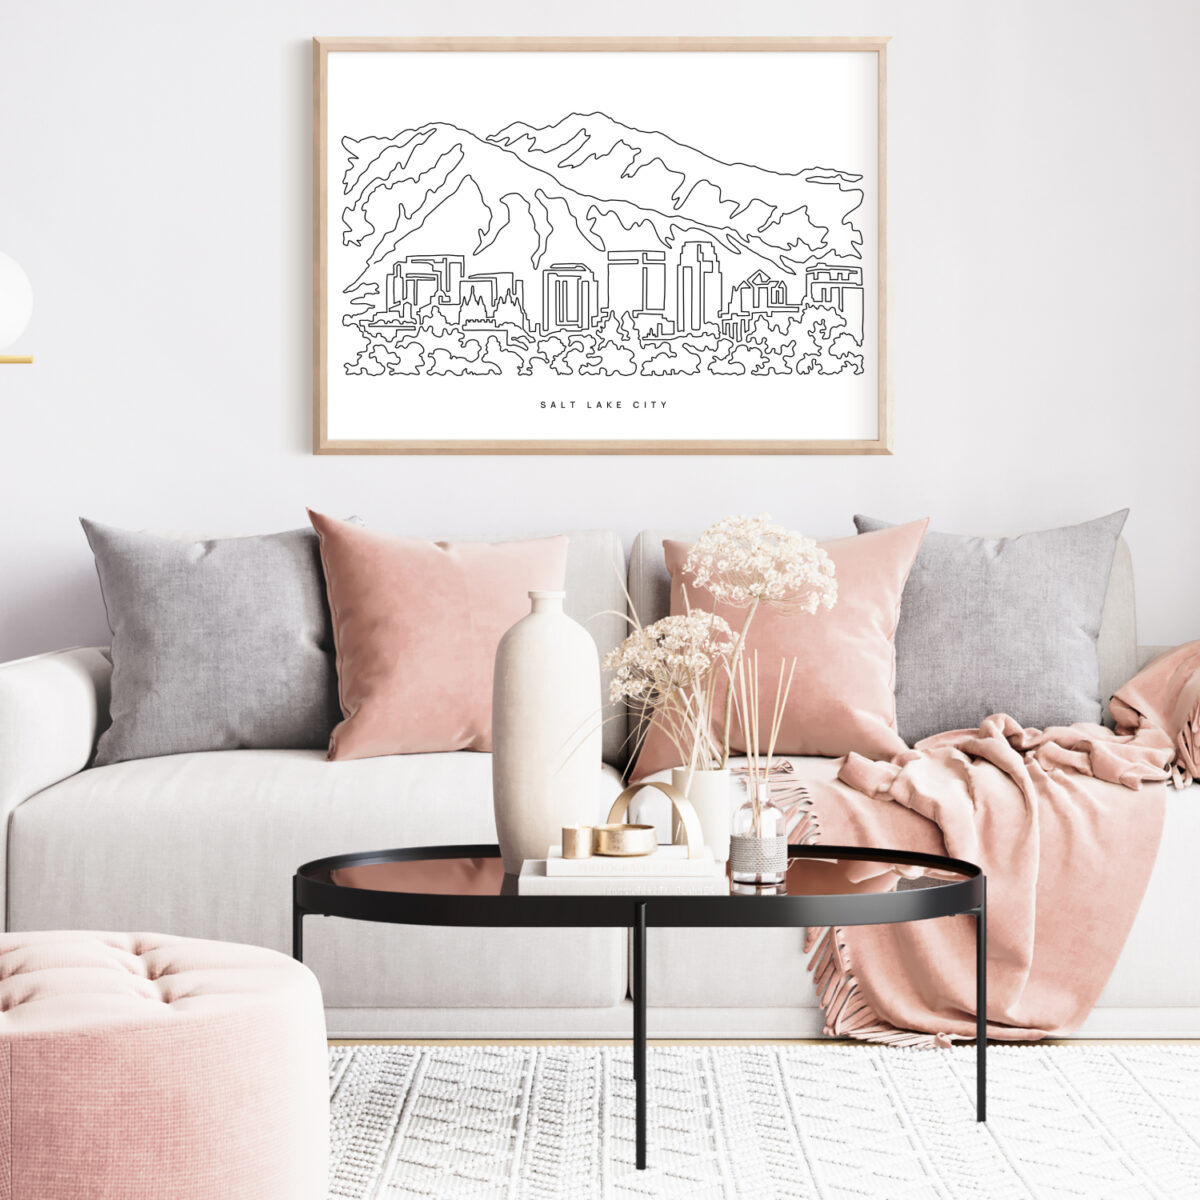 Salt Lake City Poster for Living Room